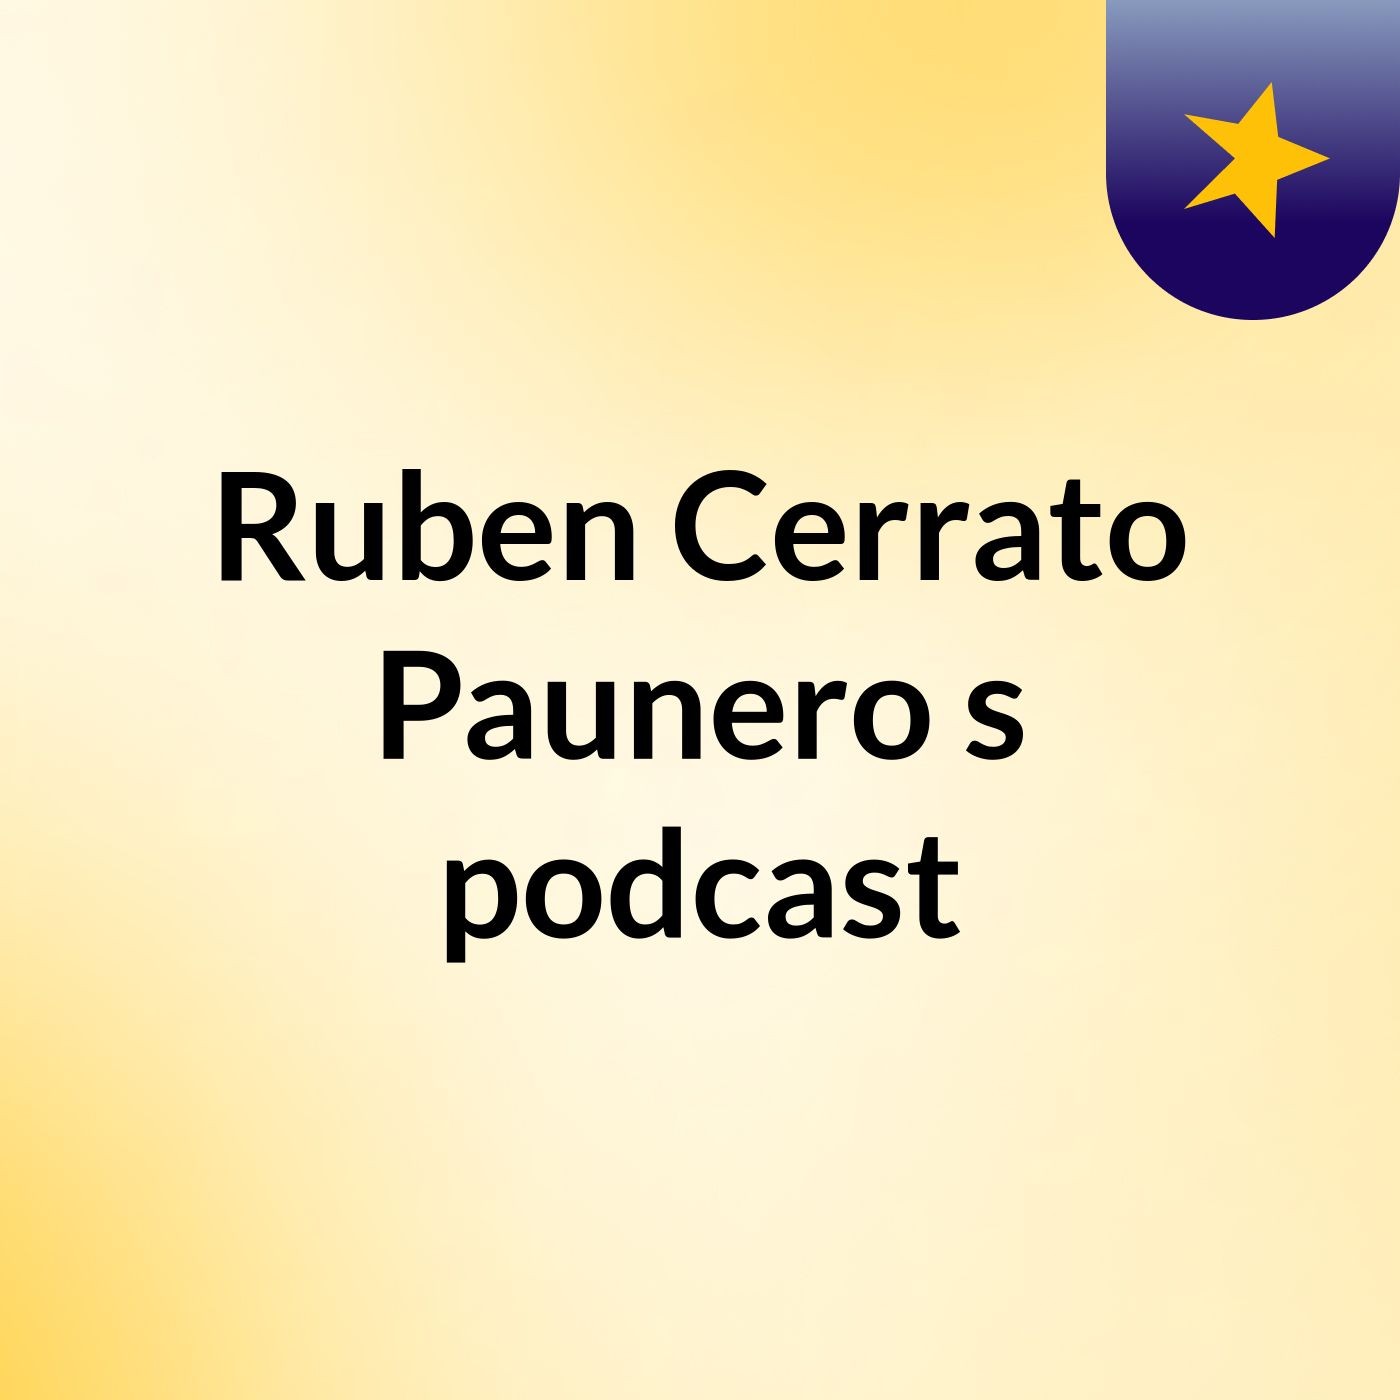 Ruben Cerrato Paunero's podcast